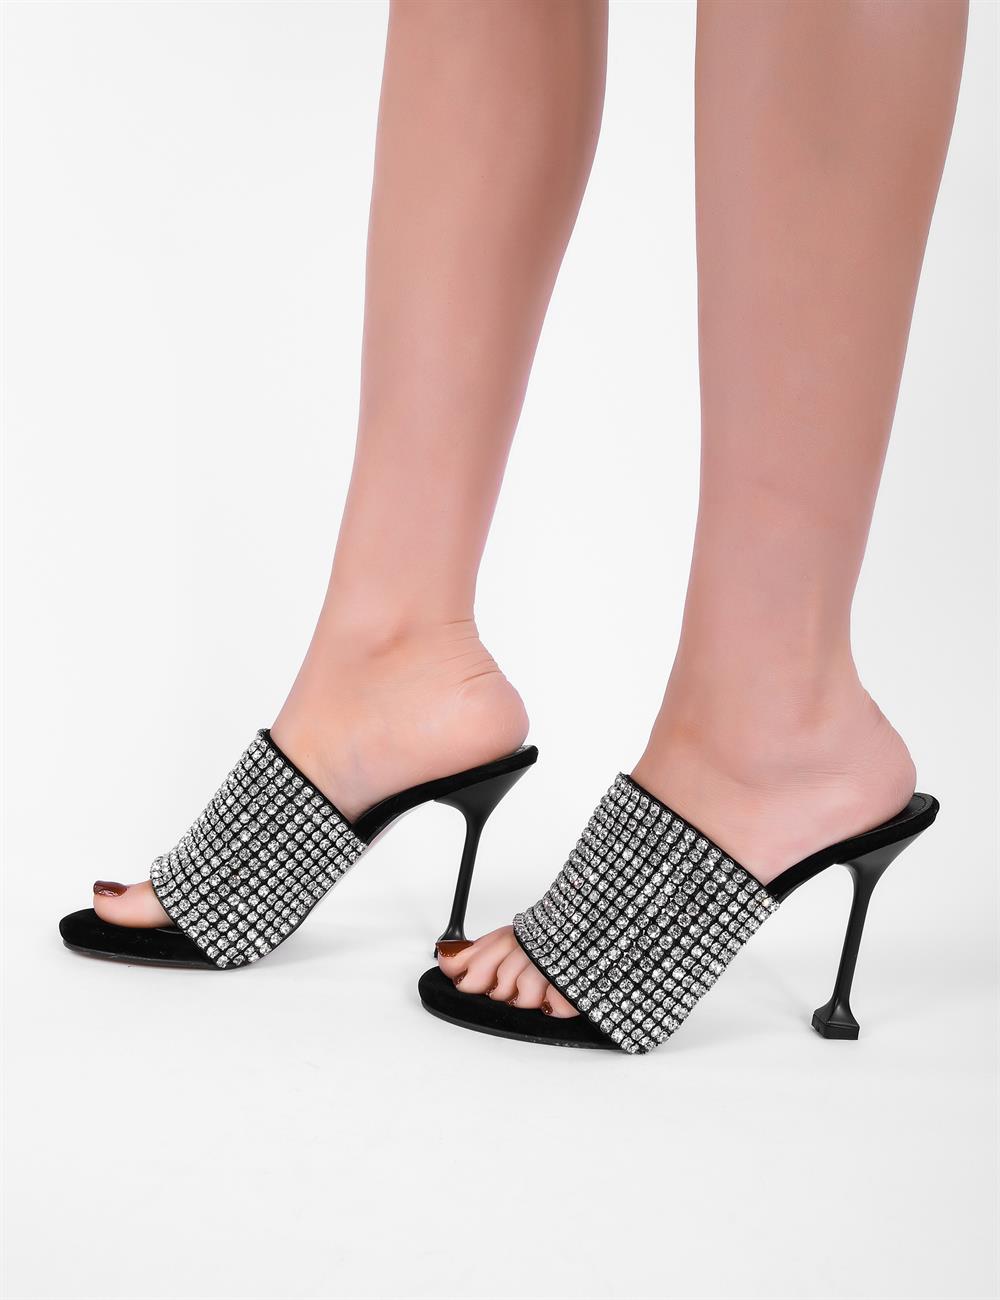 Style Fashion Kristal Taşlı Topuklu Kadın Ayakkabı Siyah - KADIN AYAKKABI